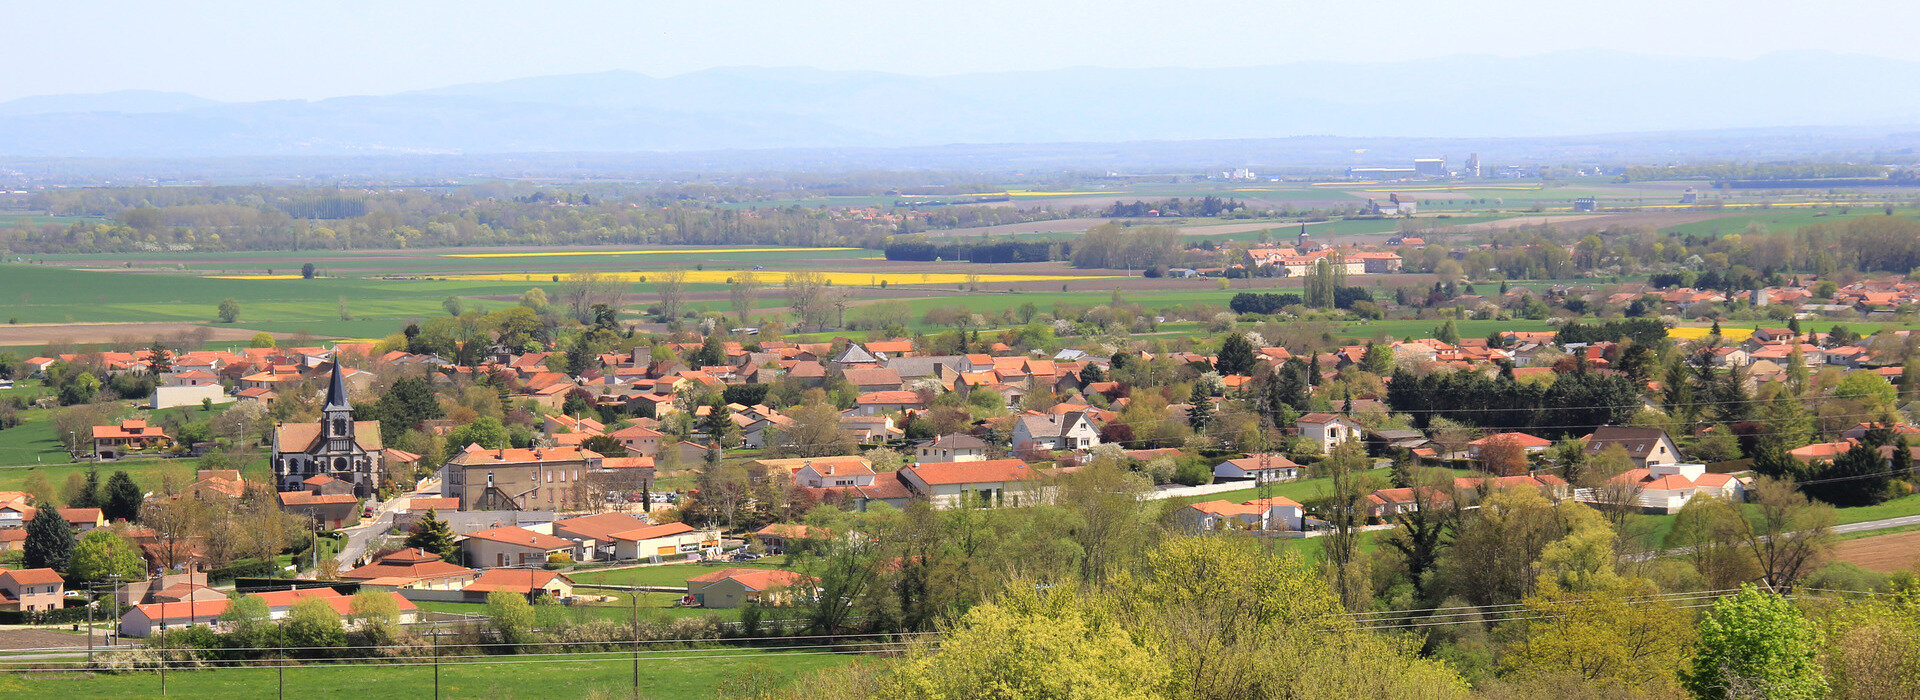 Beauregard-Vendon - Auvergne, commune des Cotes de Combrailles